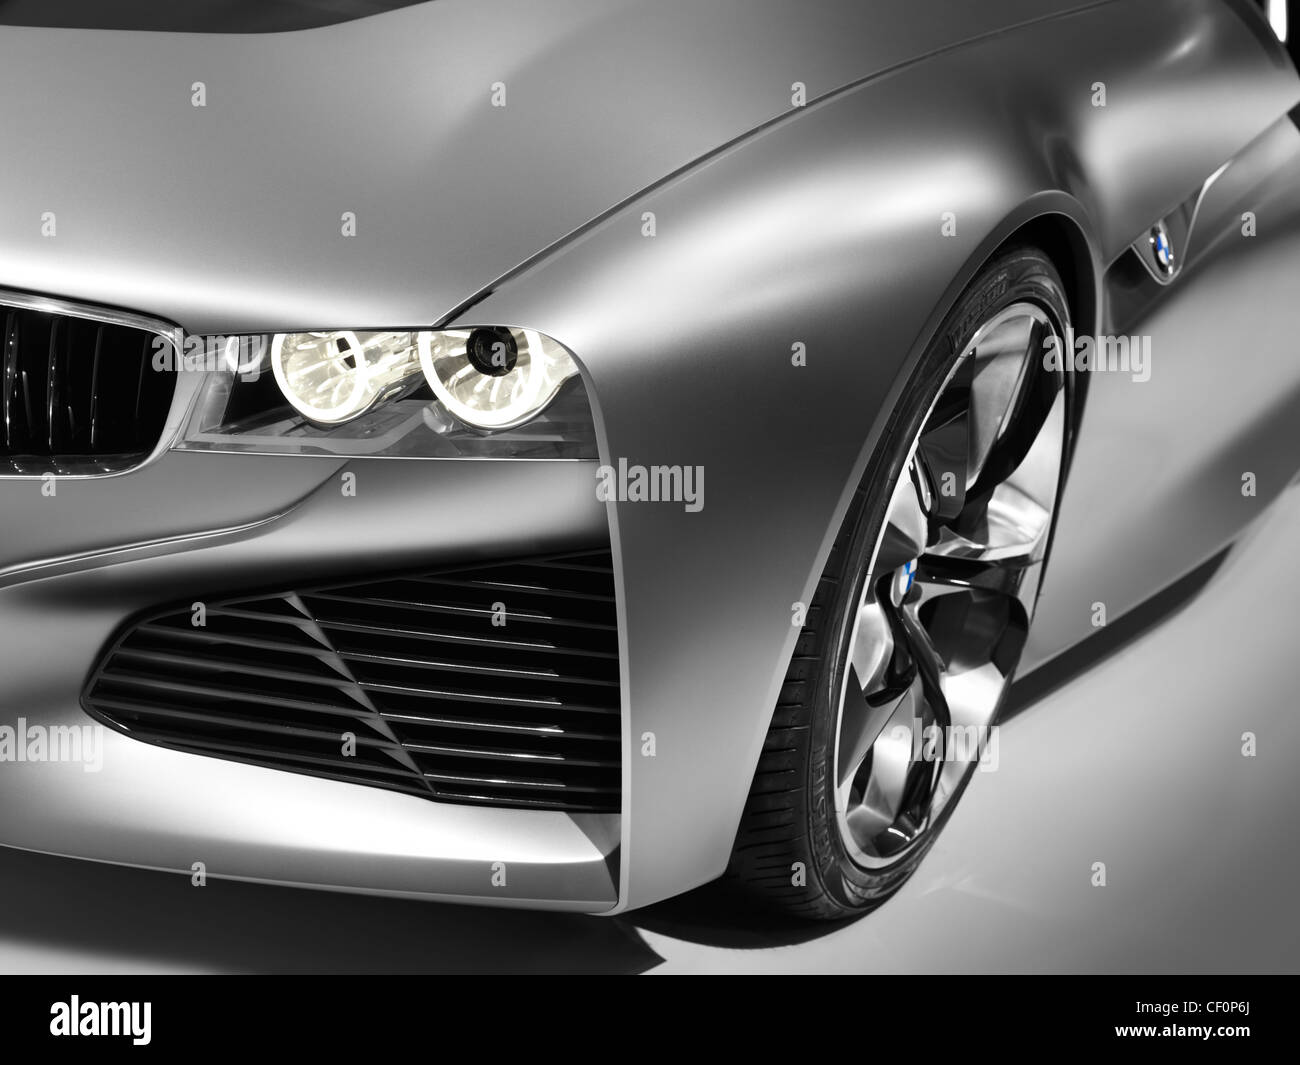 Führerschein und Drucke auf MaximImages.com – Nahaufnahme des Konzeptfahrzeugs BMW Vision ConnectedDrive mit Scheinwerfer und glänzender Karosserie Stockfoto